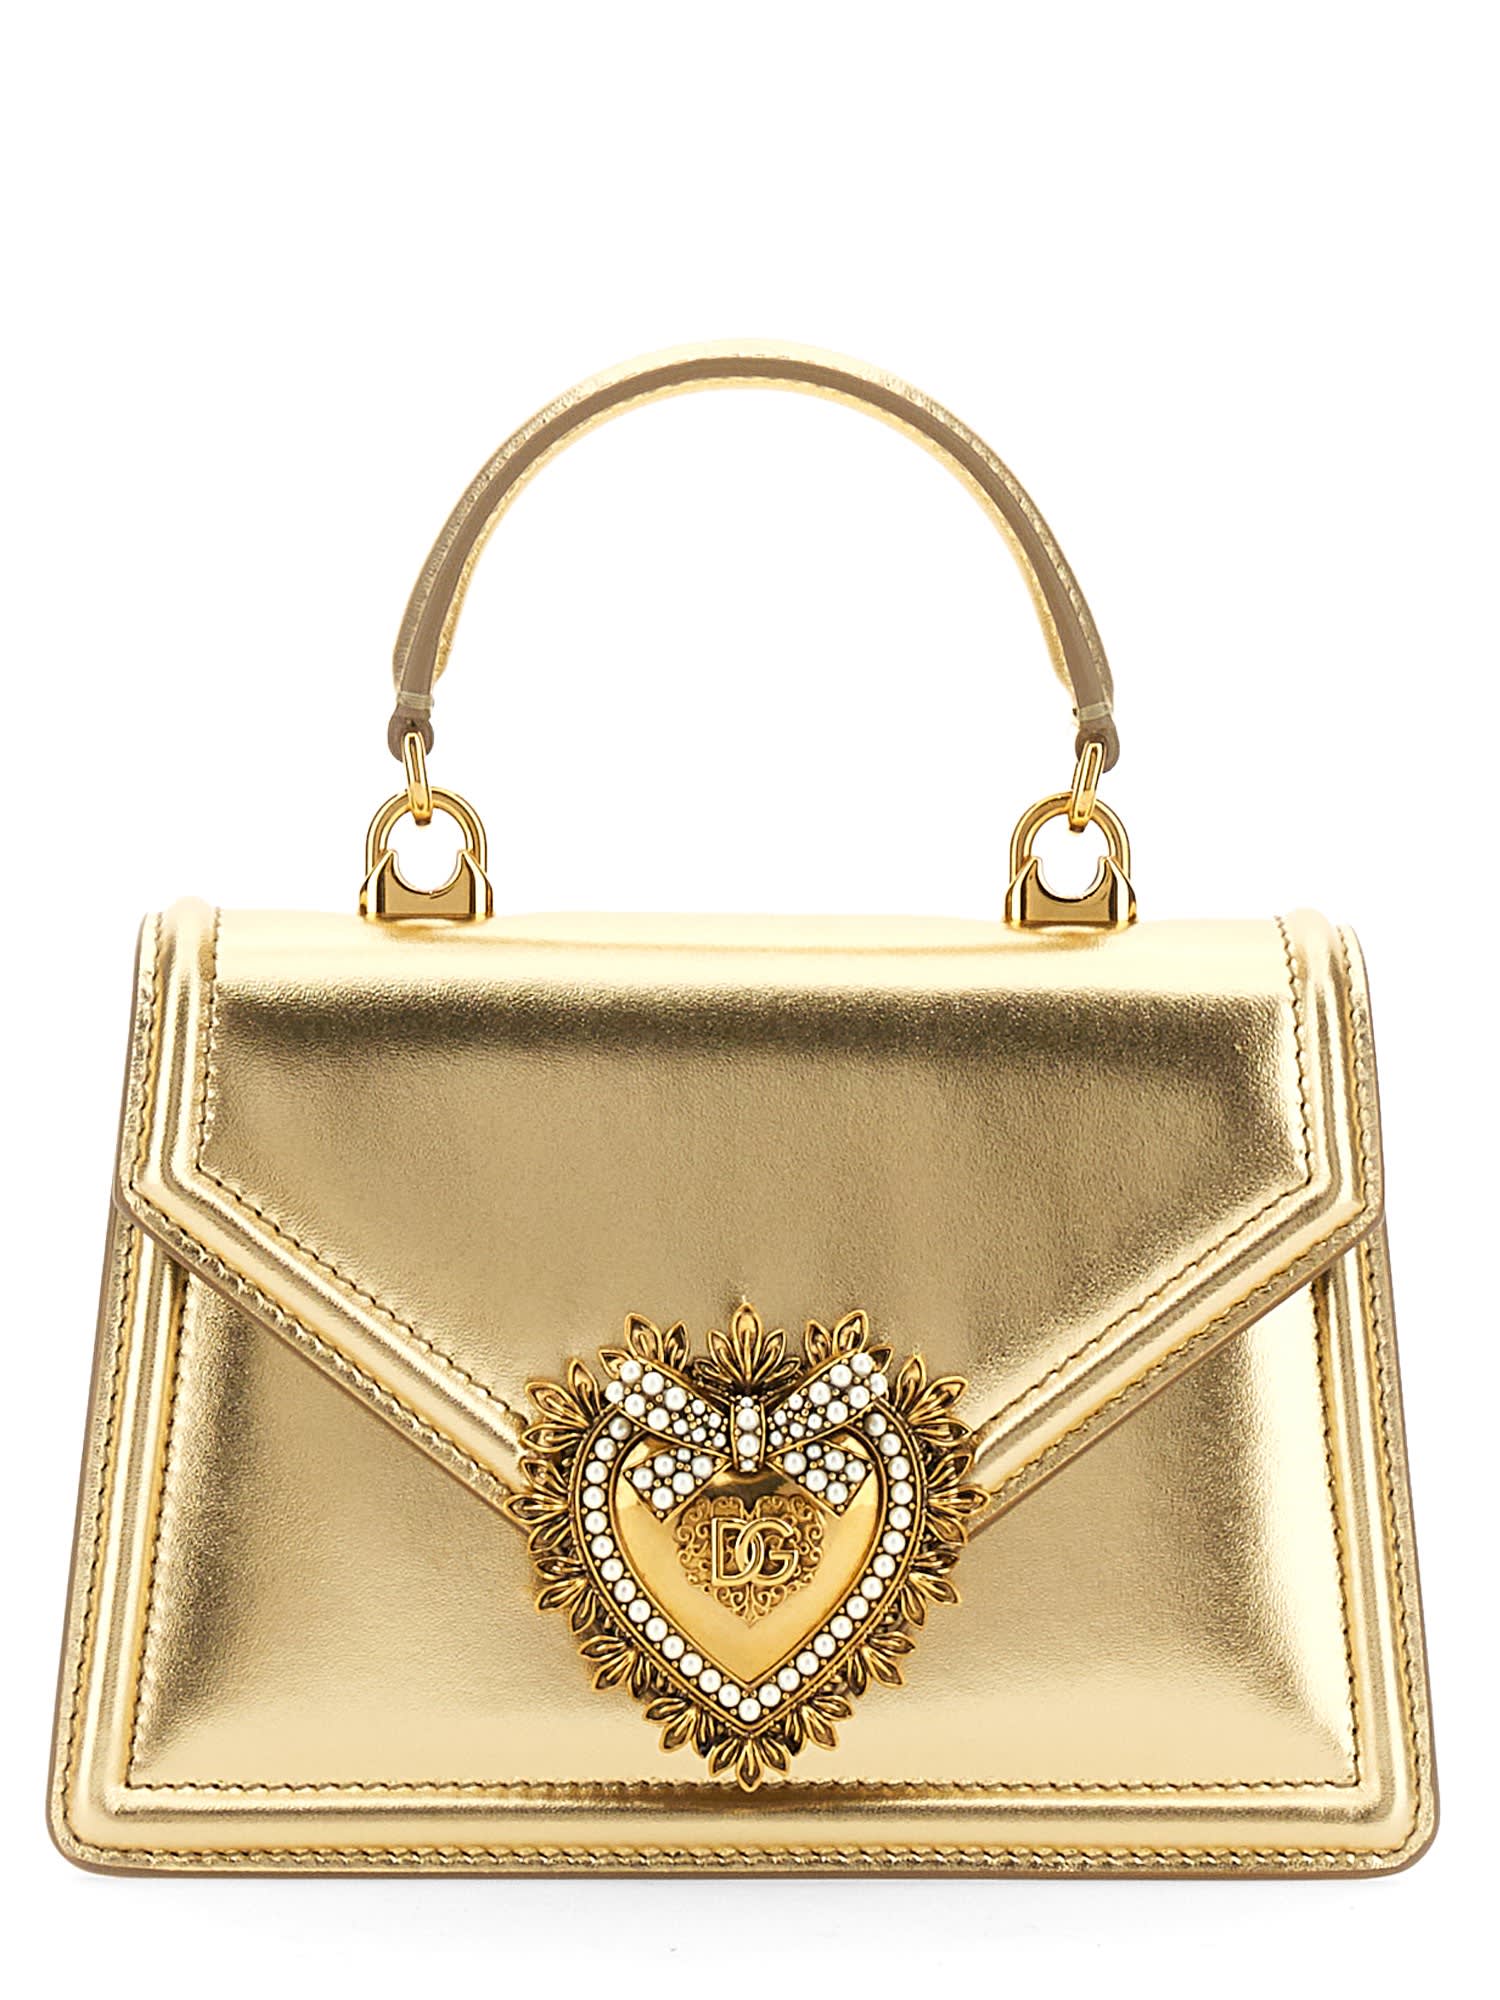 Dolce & Gabbana Devotion Handbag